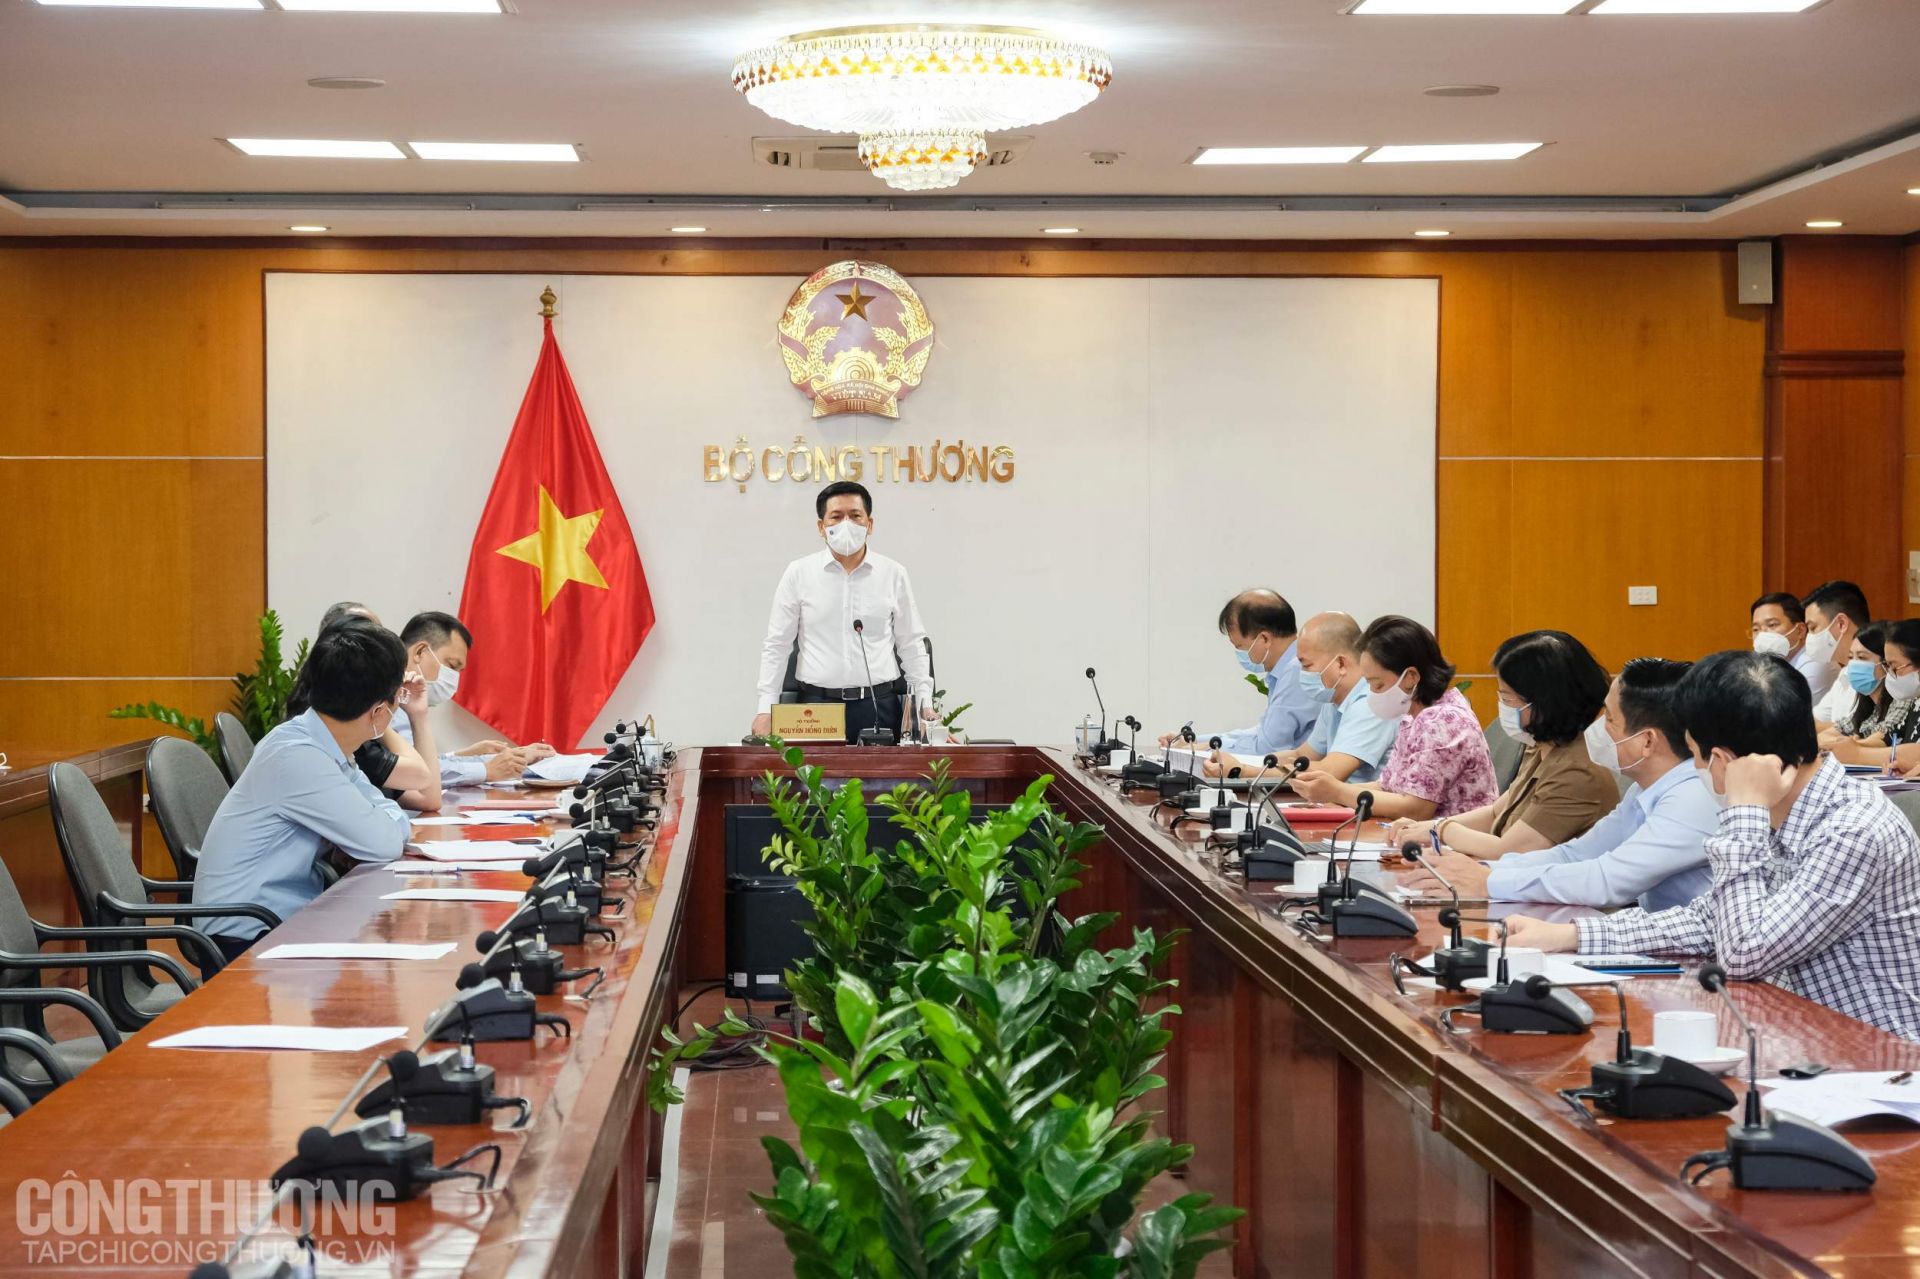 Bộ trưởng Nguyễn Hồng Diên đồng chủ trì buổi làm việc trực tuyến với tỉnh Bắc Giang sáng 25/5/2021